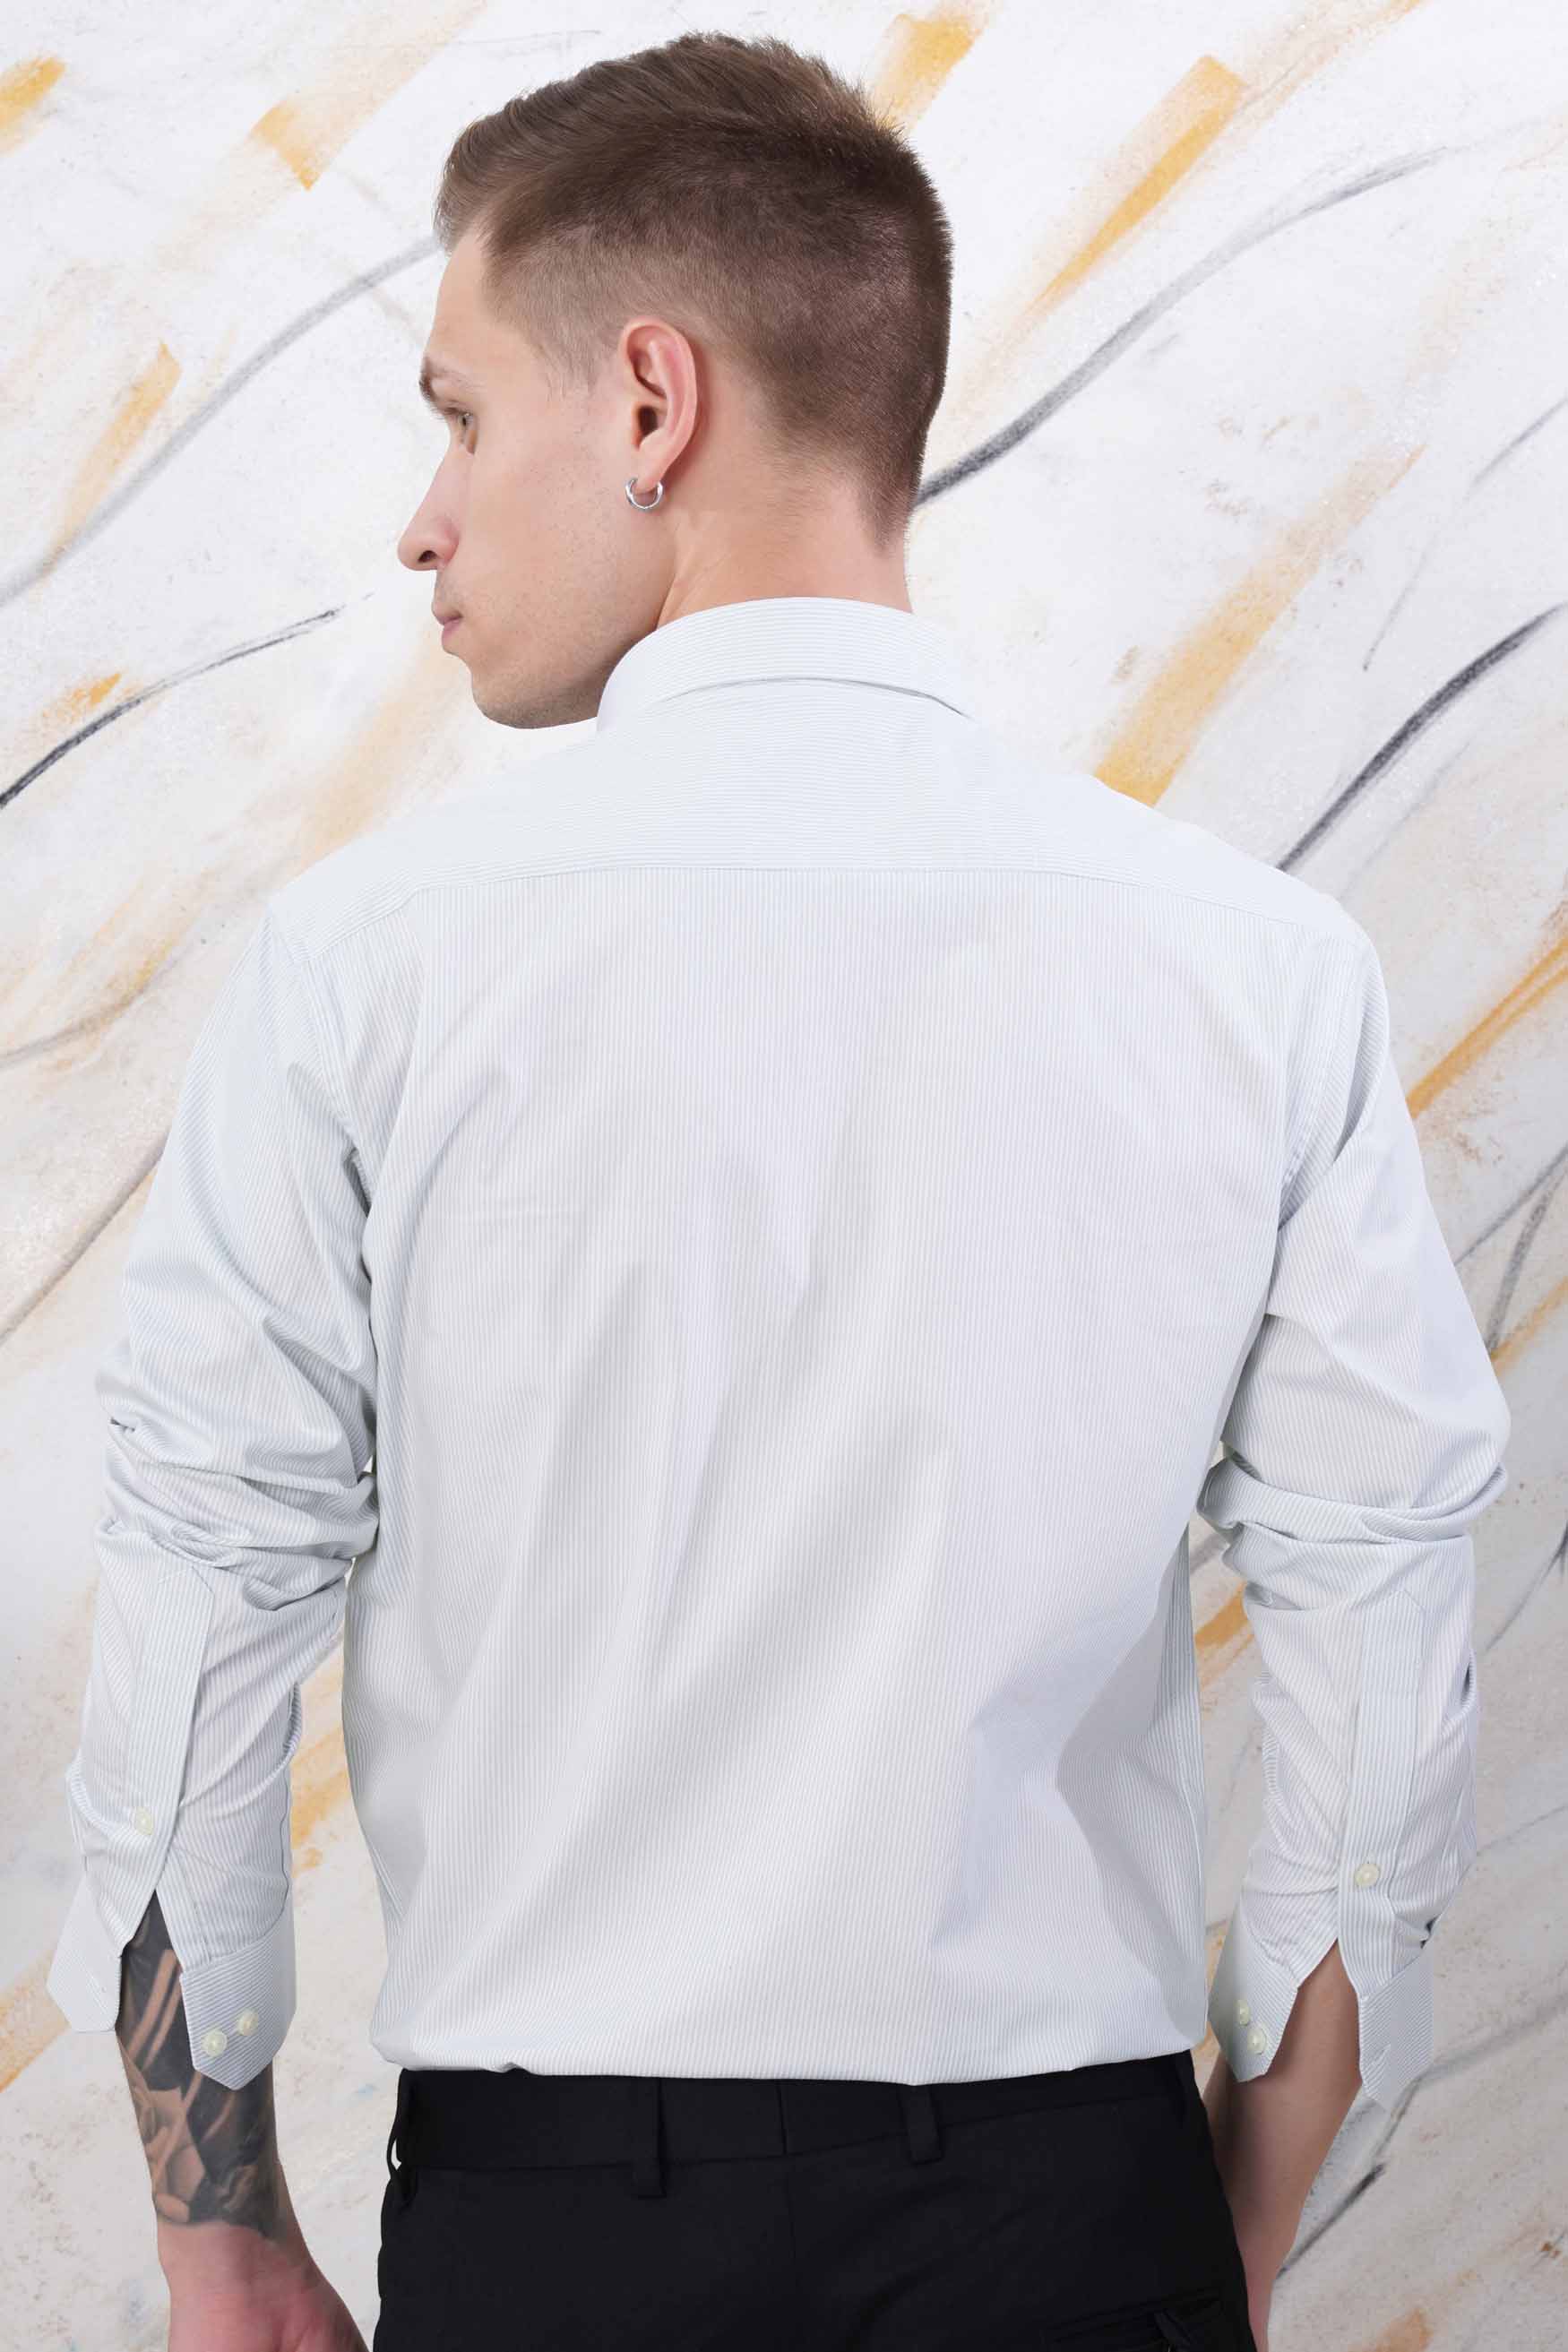 Gainsboro Gray and White Pinstriped Premium Cotton Shirt